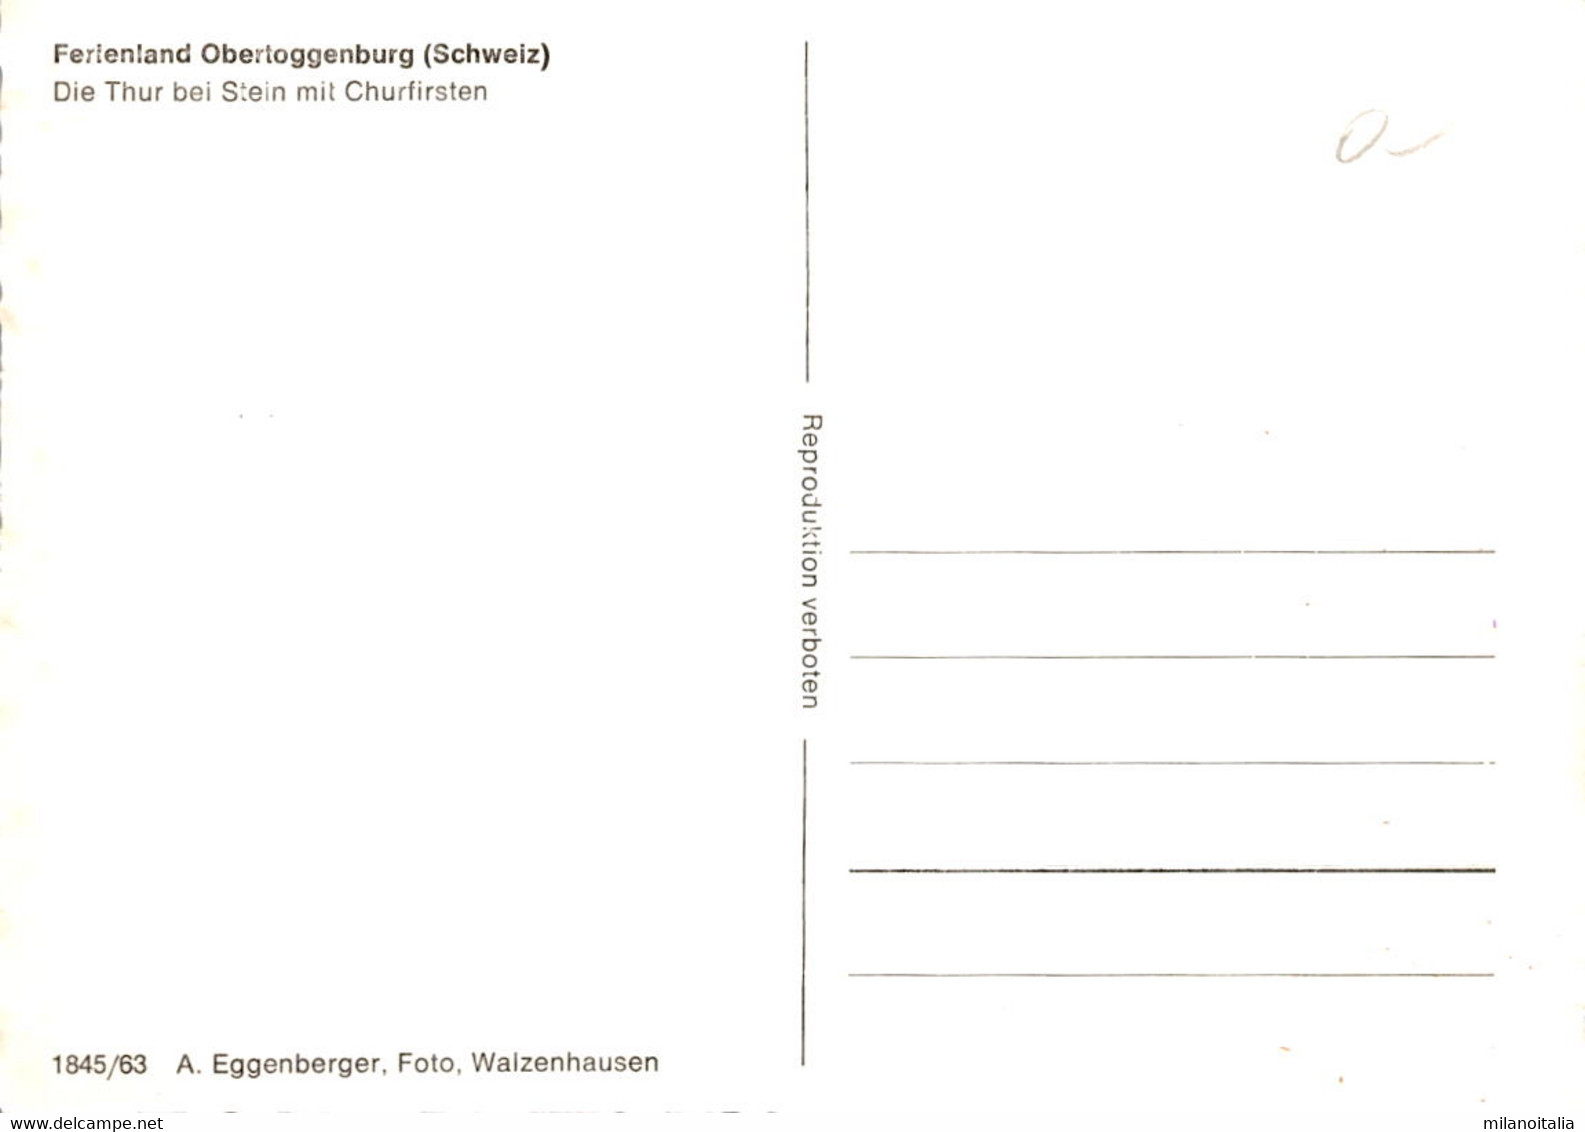 Ferienland Obertoggenburg - Die Thur Bei Stein Mit Churfirsten (1845/63) (a) - Stein